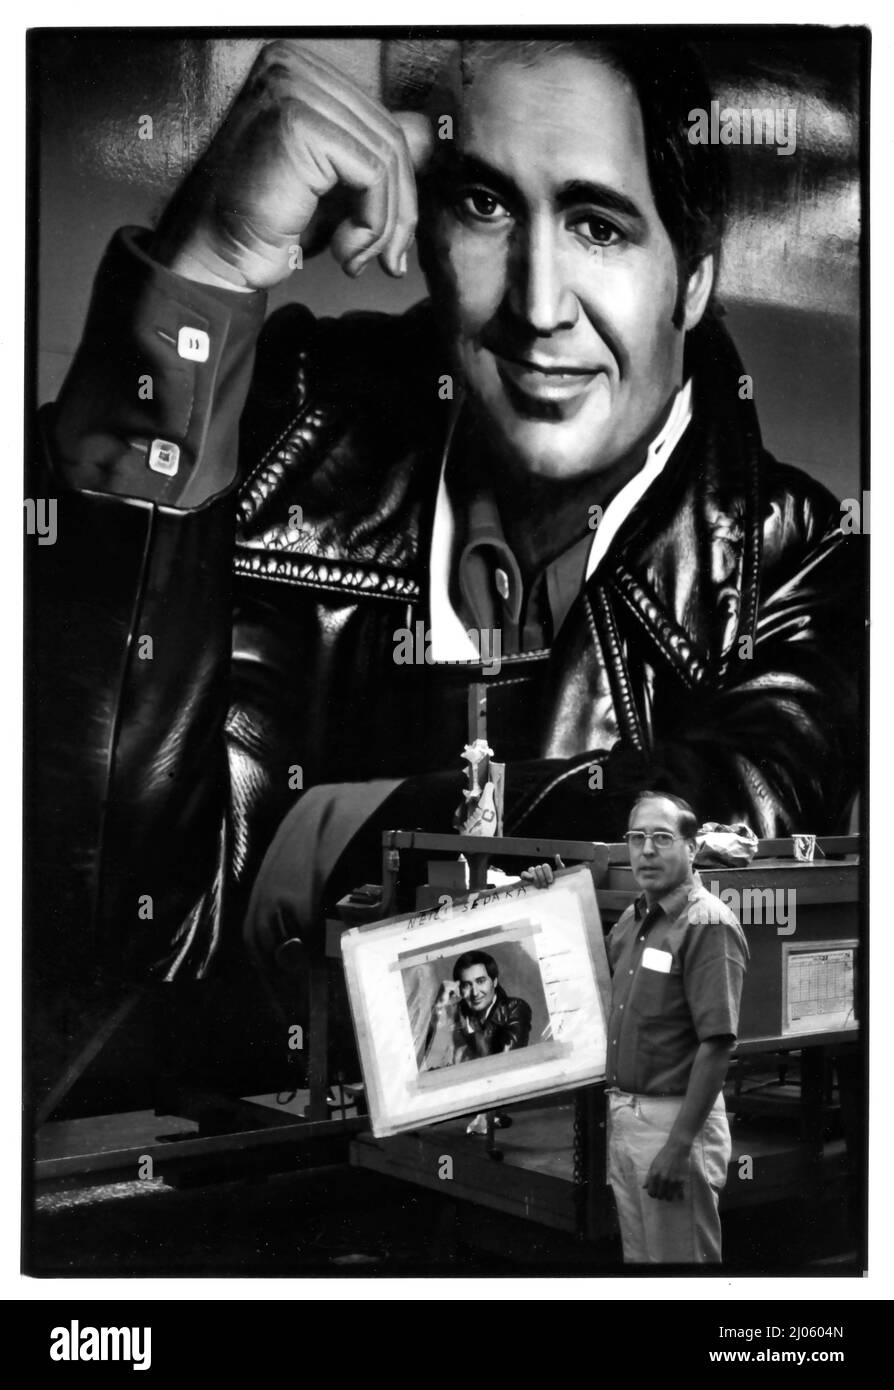 Werbetafel-Meister Mario Rueda, der 1977 vor seinem großen handgemalten Bild des Musikstars Neil Sedaka im Foster & Kleiser-Werbetafel-Studio in Los Angeles, CA, stand. Stockfoto